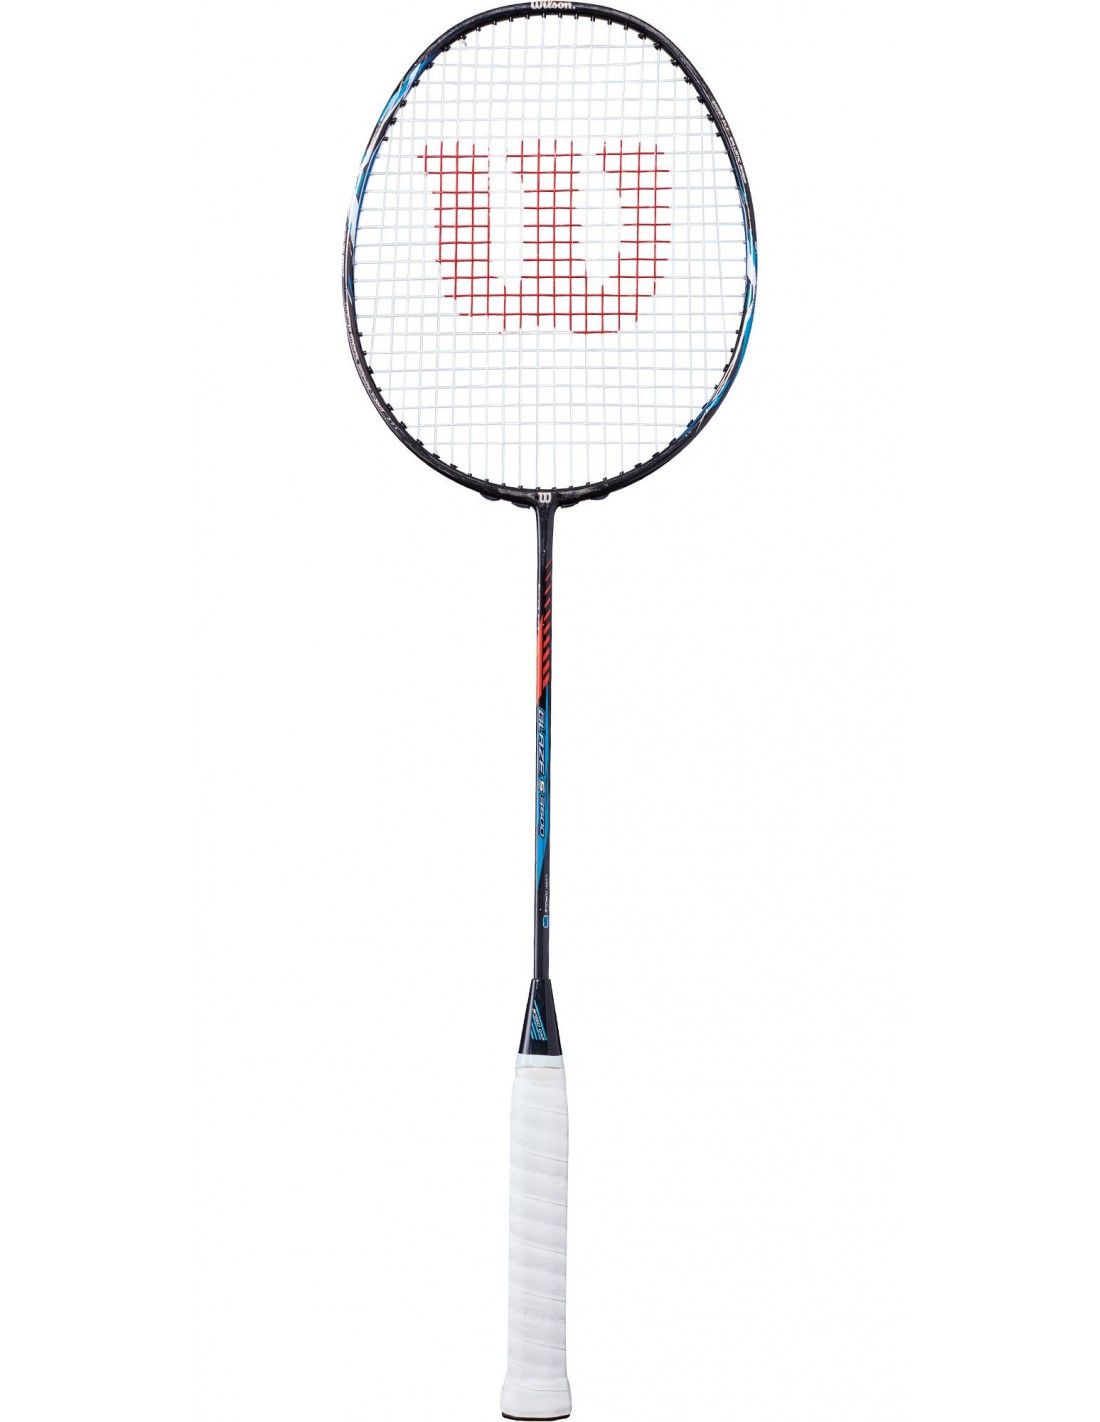 https://www.sportarticle.com/8529-thickbox_default/raquette-de-badminton-wilson-s3600.jpg